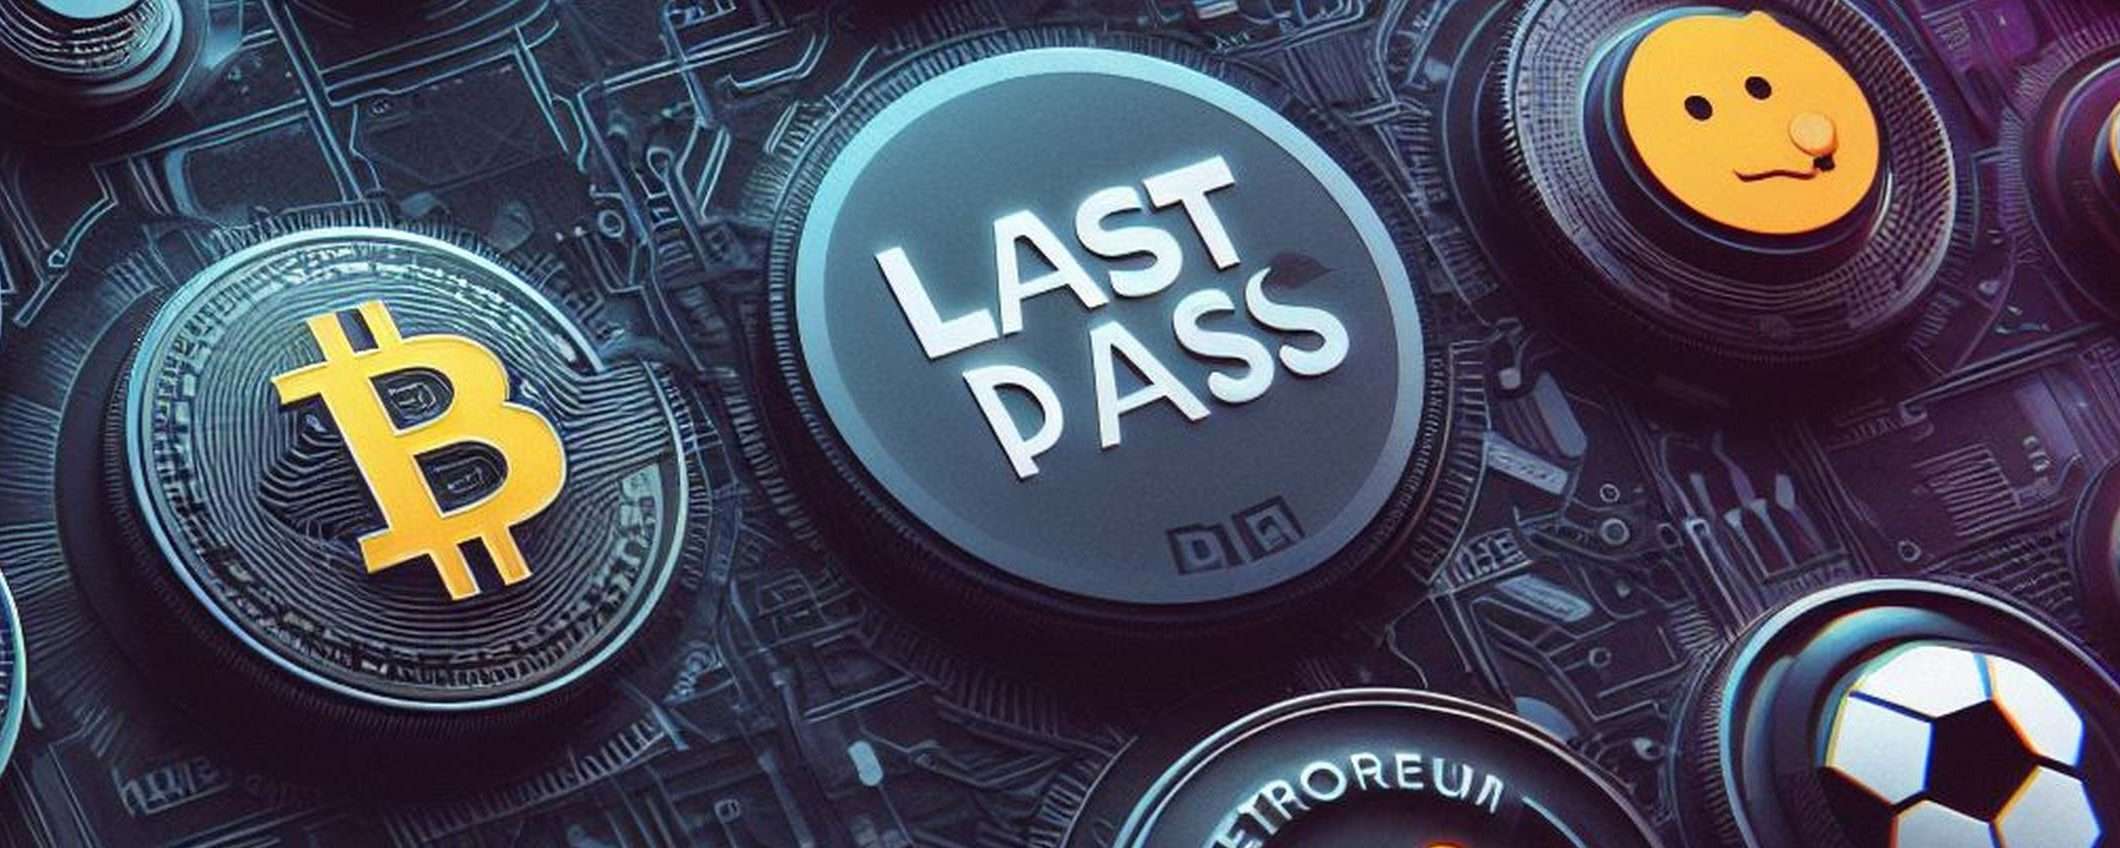 LastPass: prova gratuita per un futuro senza password da ricordare